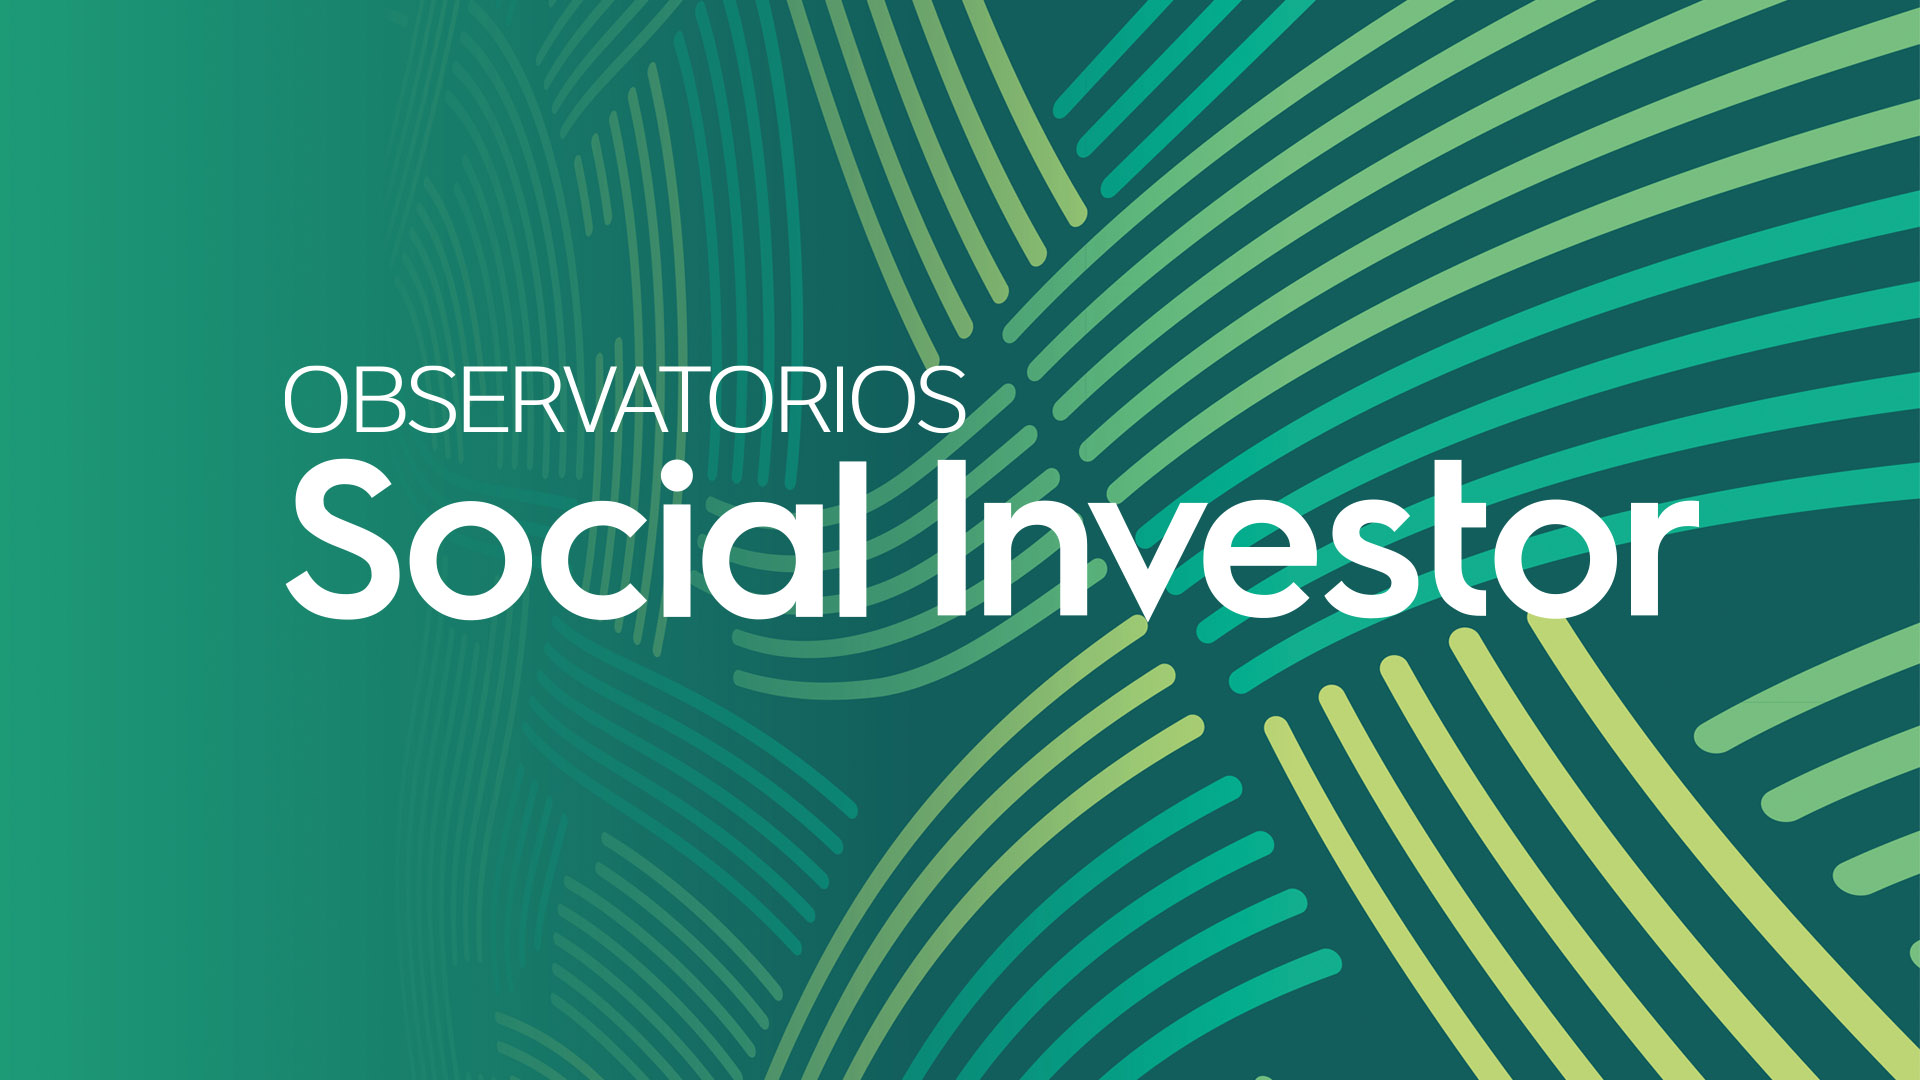 Social Investor